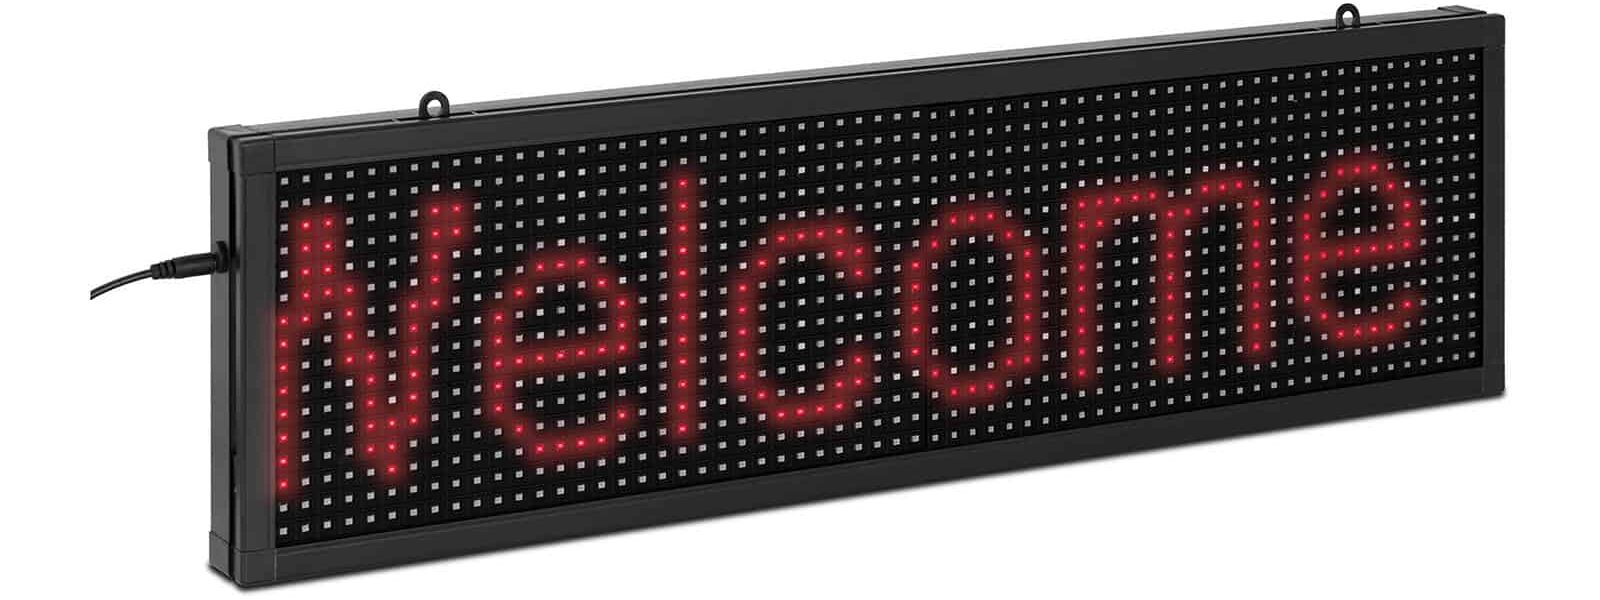 Painel LED de publicidade: LEDs vermelhos, dimensões 67 x 19 cm, iOS/Android, fácil instalação, número de LEDs: 64 x 16 CONFIRA!